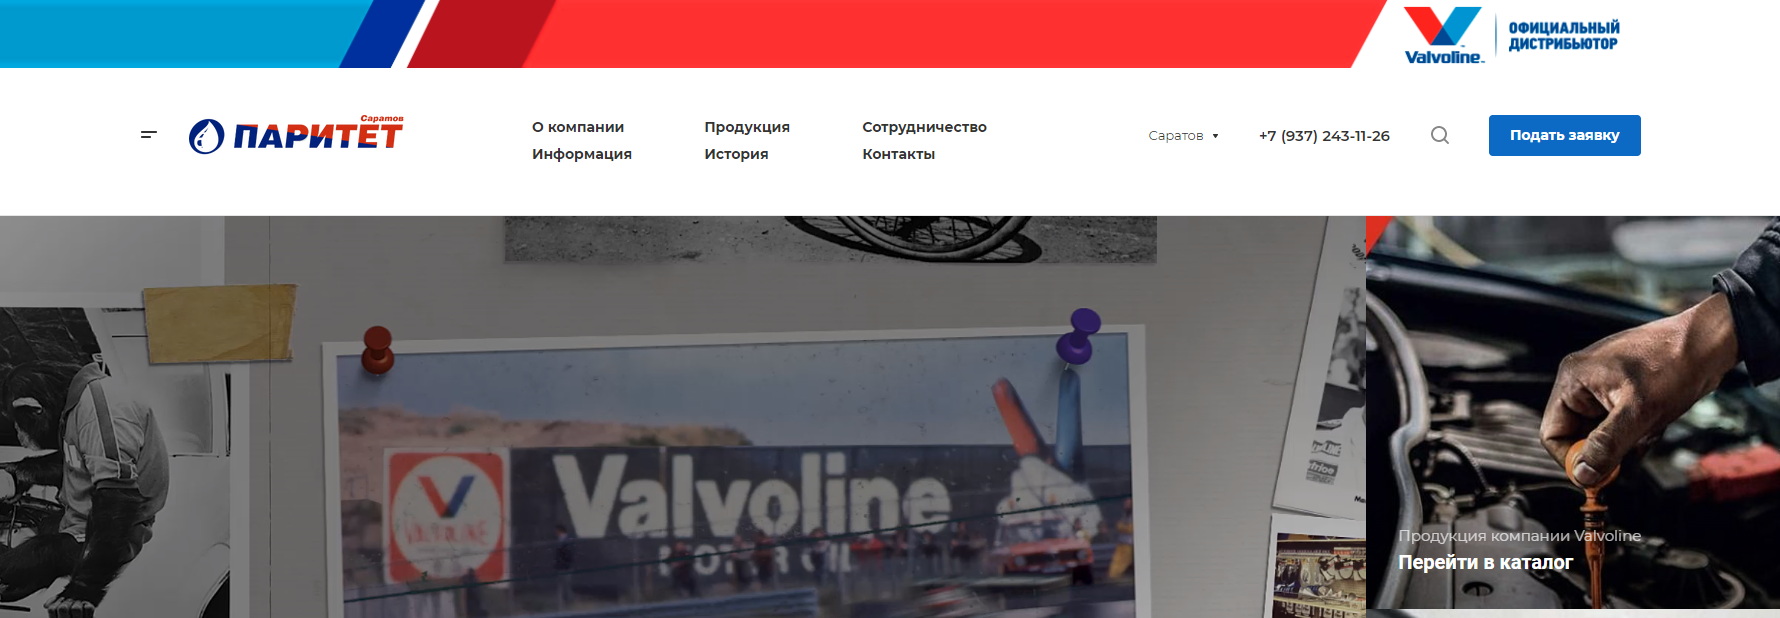 Официальный дистрибьютер VALVOLINE - реализация проекта